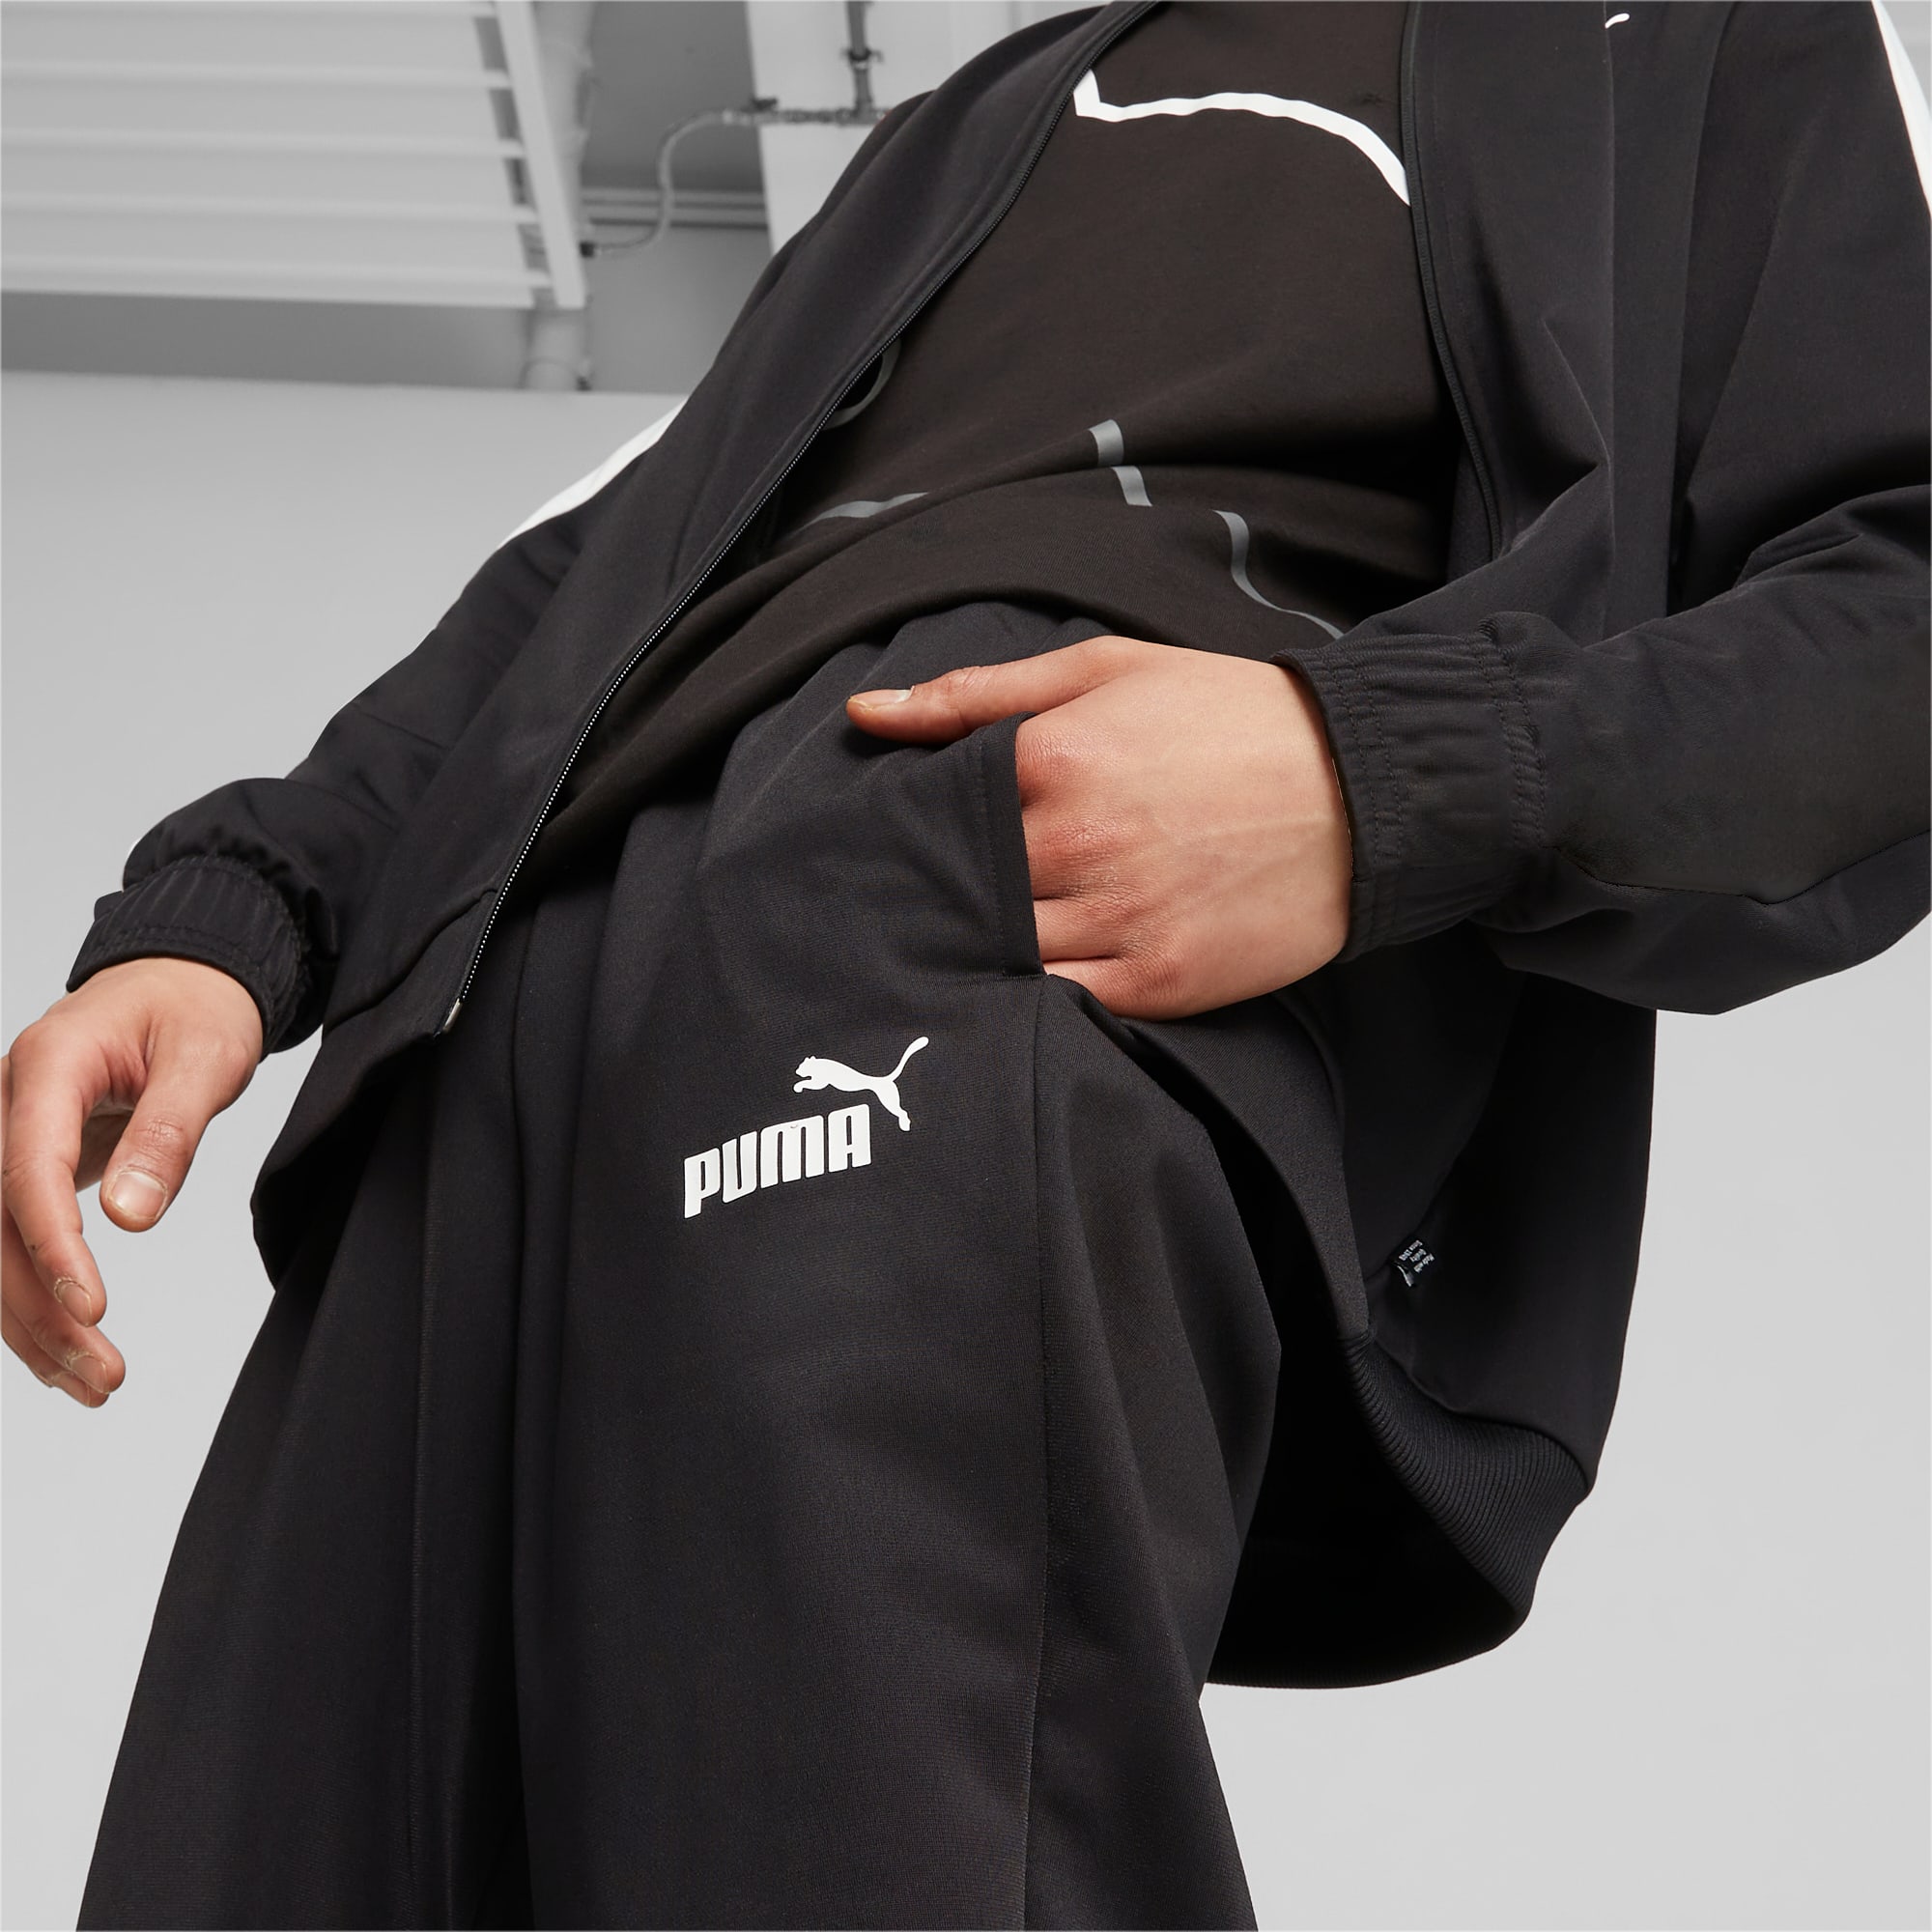 PUMA Men's Baseball Tricot Suit, Black, Size S